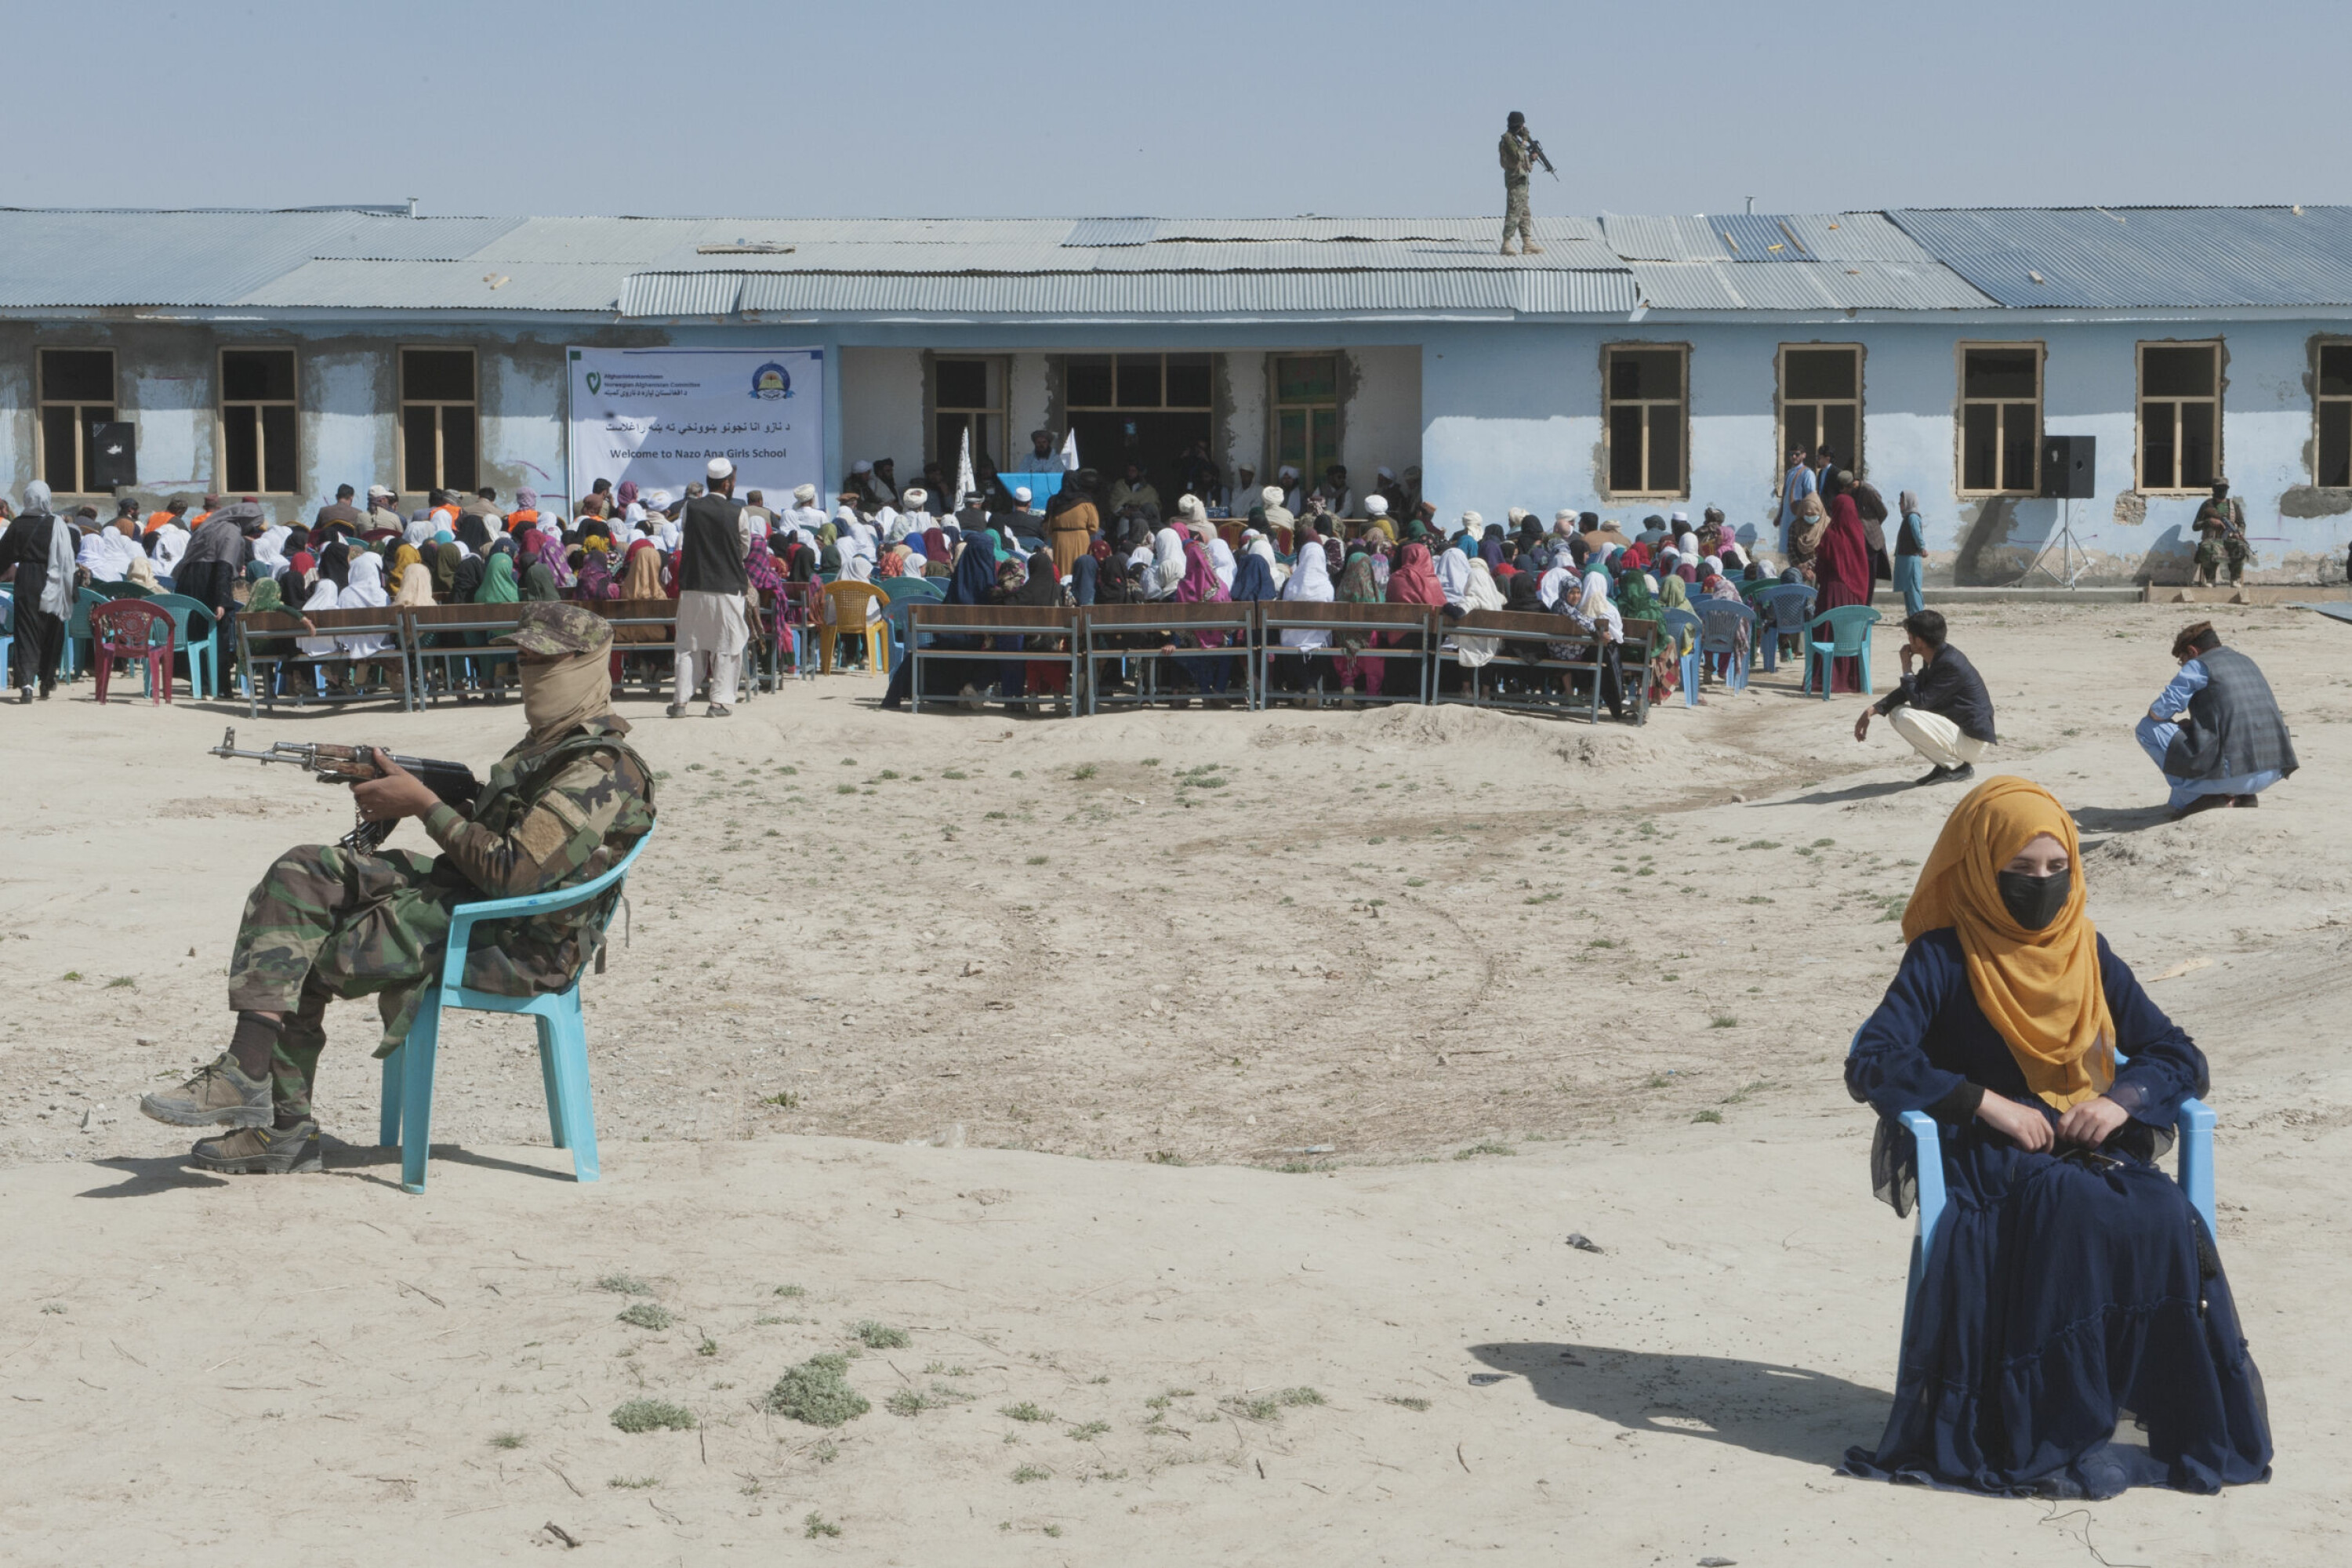 Åpning av Nazo Ana jenteskole, en barneskole, i Andar-distriktet i Ghazni. Her har det aldri vært en skole for jenter før og lokalsamfunnet har jobbet hardt for å få det til. Hundrevis av jenter ble påmeldt med det samme det ble kjent at skolen skulle åpnes.